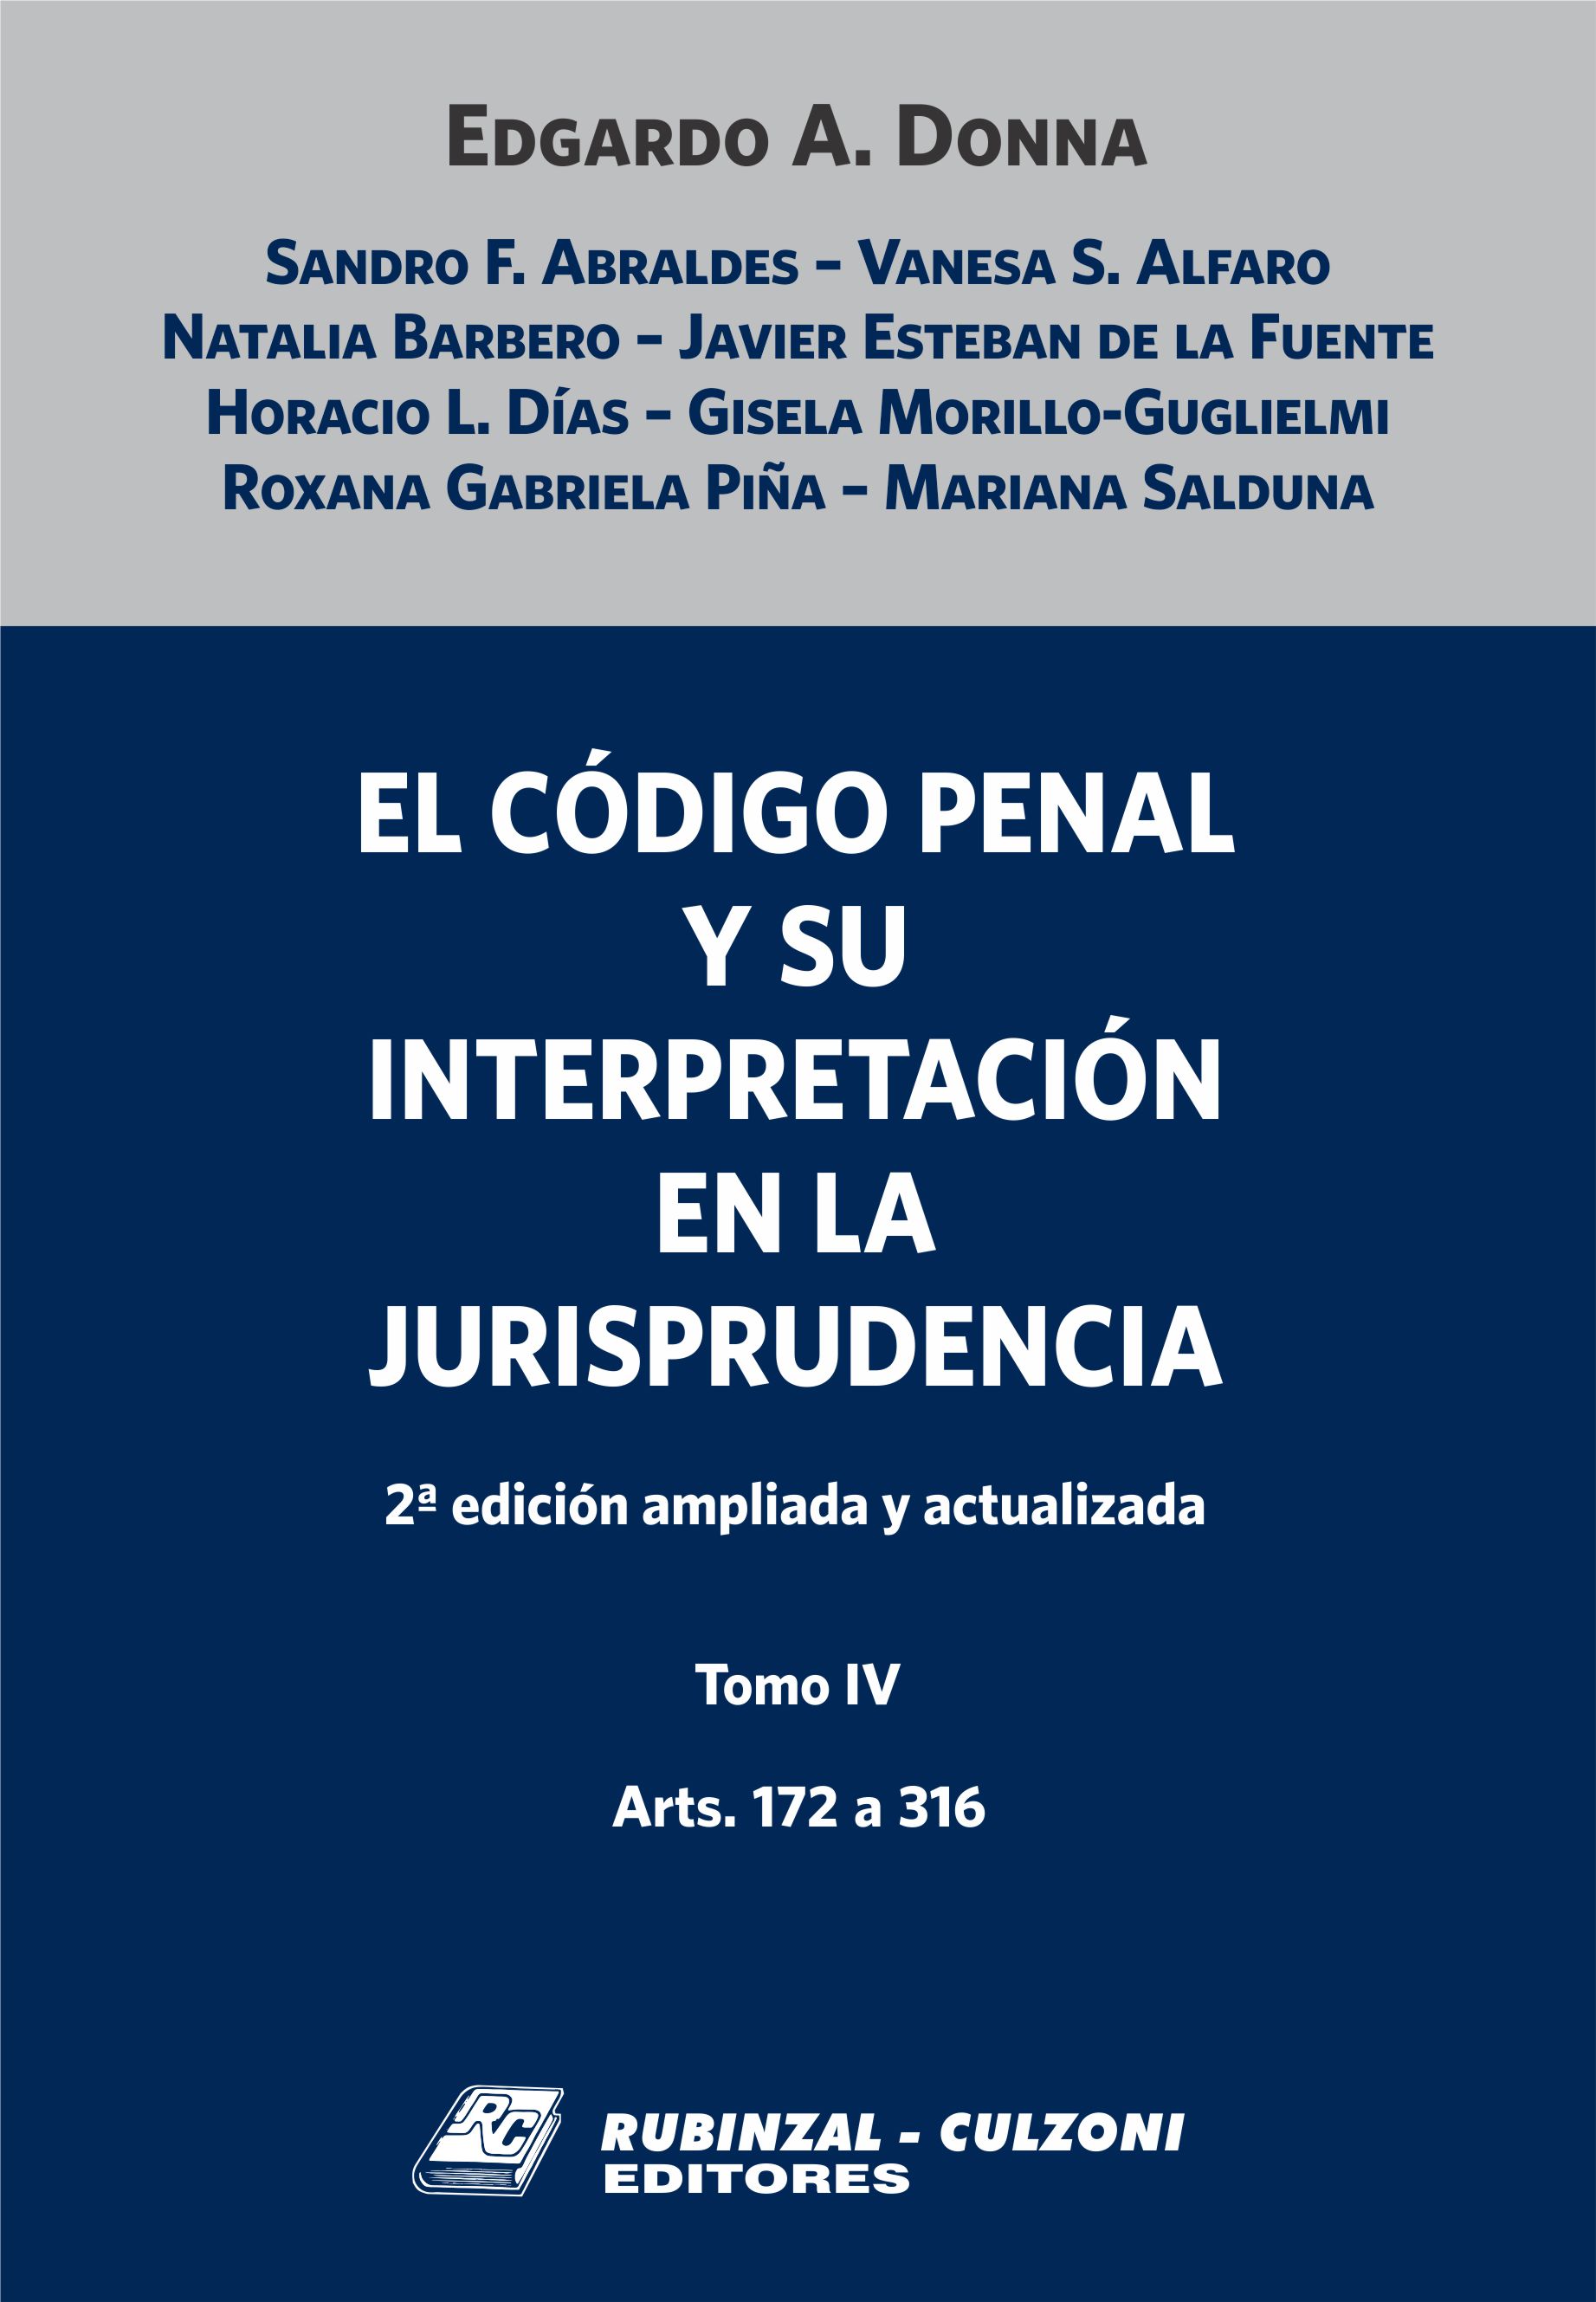 El Código Penal y su interpretación en la Jurisprudencia. - Tomo IV. 2ª Edición ampliada y actualizada.